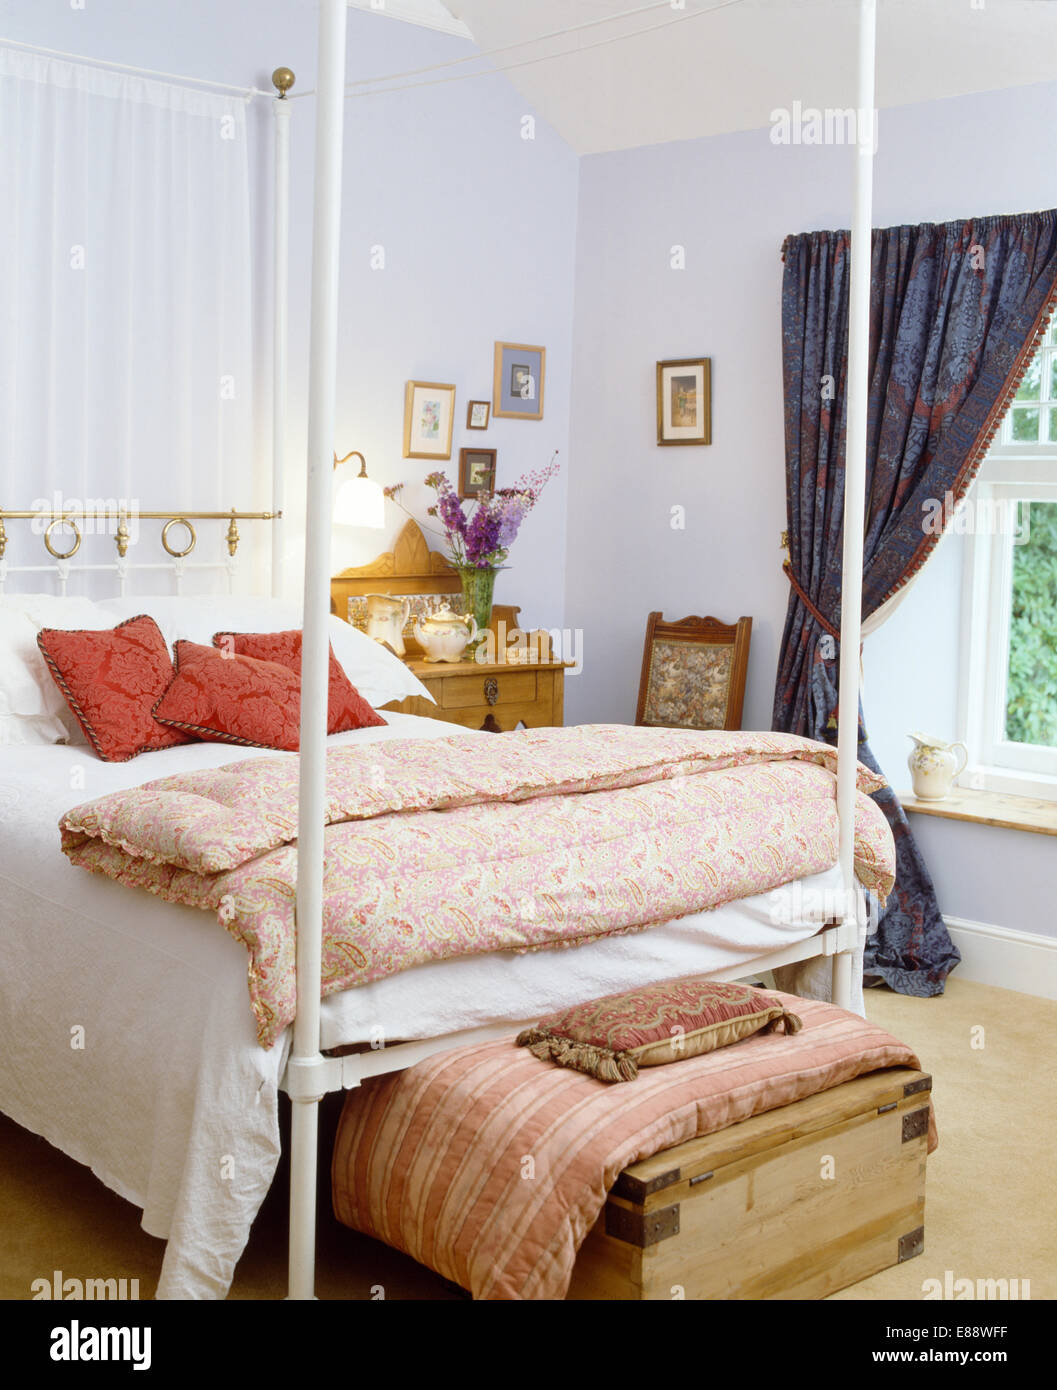 Édredon vintage pliée sur lit de métal blanc en bleu pâle avec coussins sur  old pine poitrine au pied du lit Photo Stock - Alamy